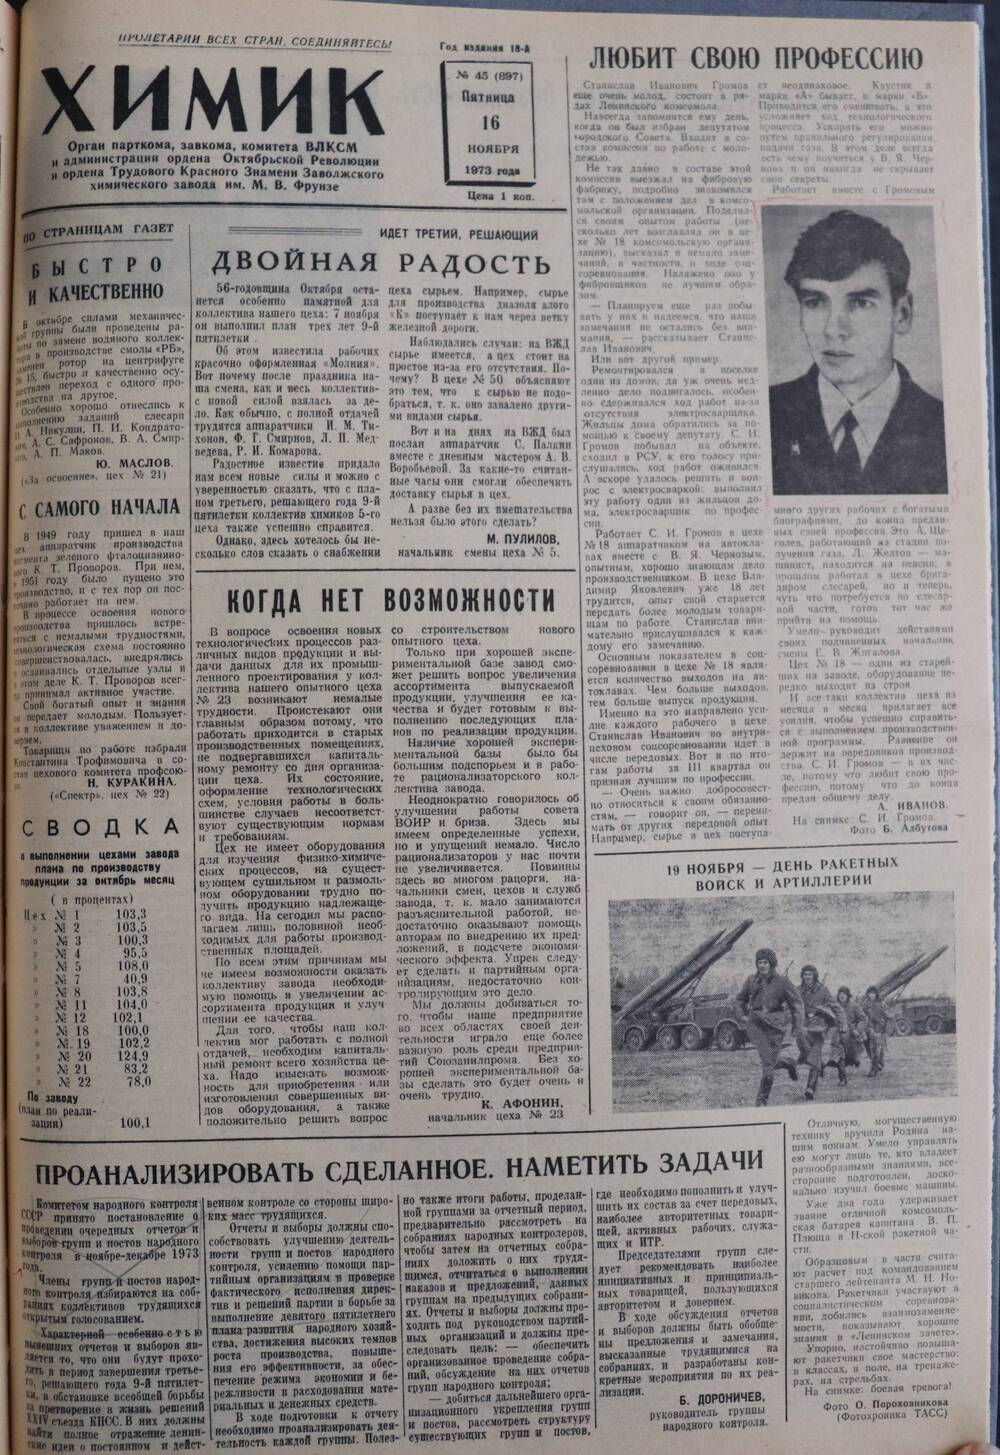 Газета «Химик» № 45 от 16 ноября 1973 года.